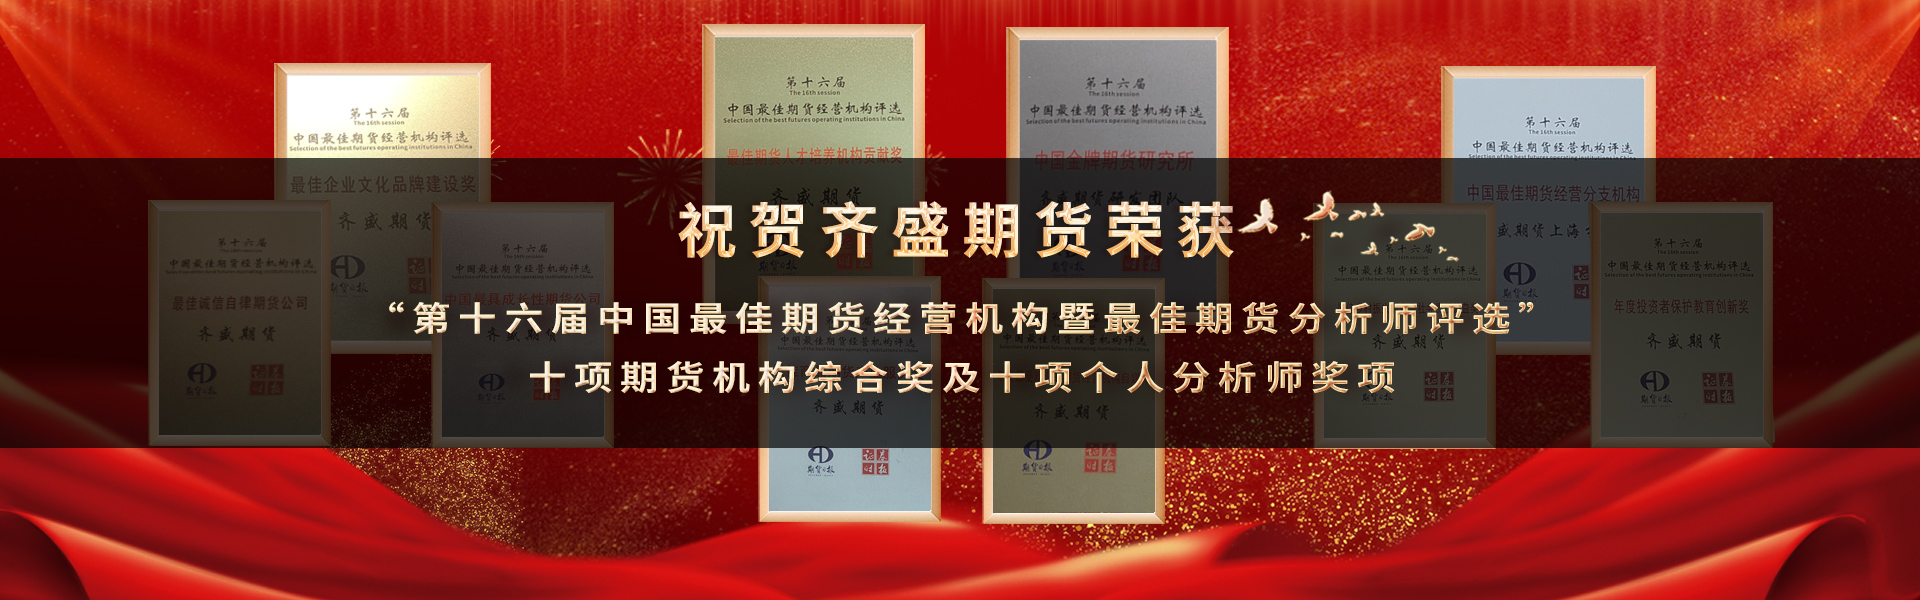 祝贺齐盛期货荣获 “第十六届中国最佳期货经营机构暨最佳期货分析师奖项